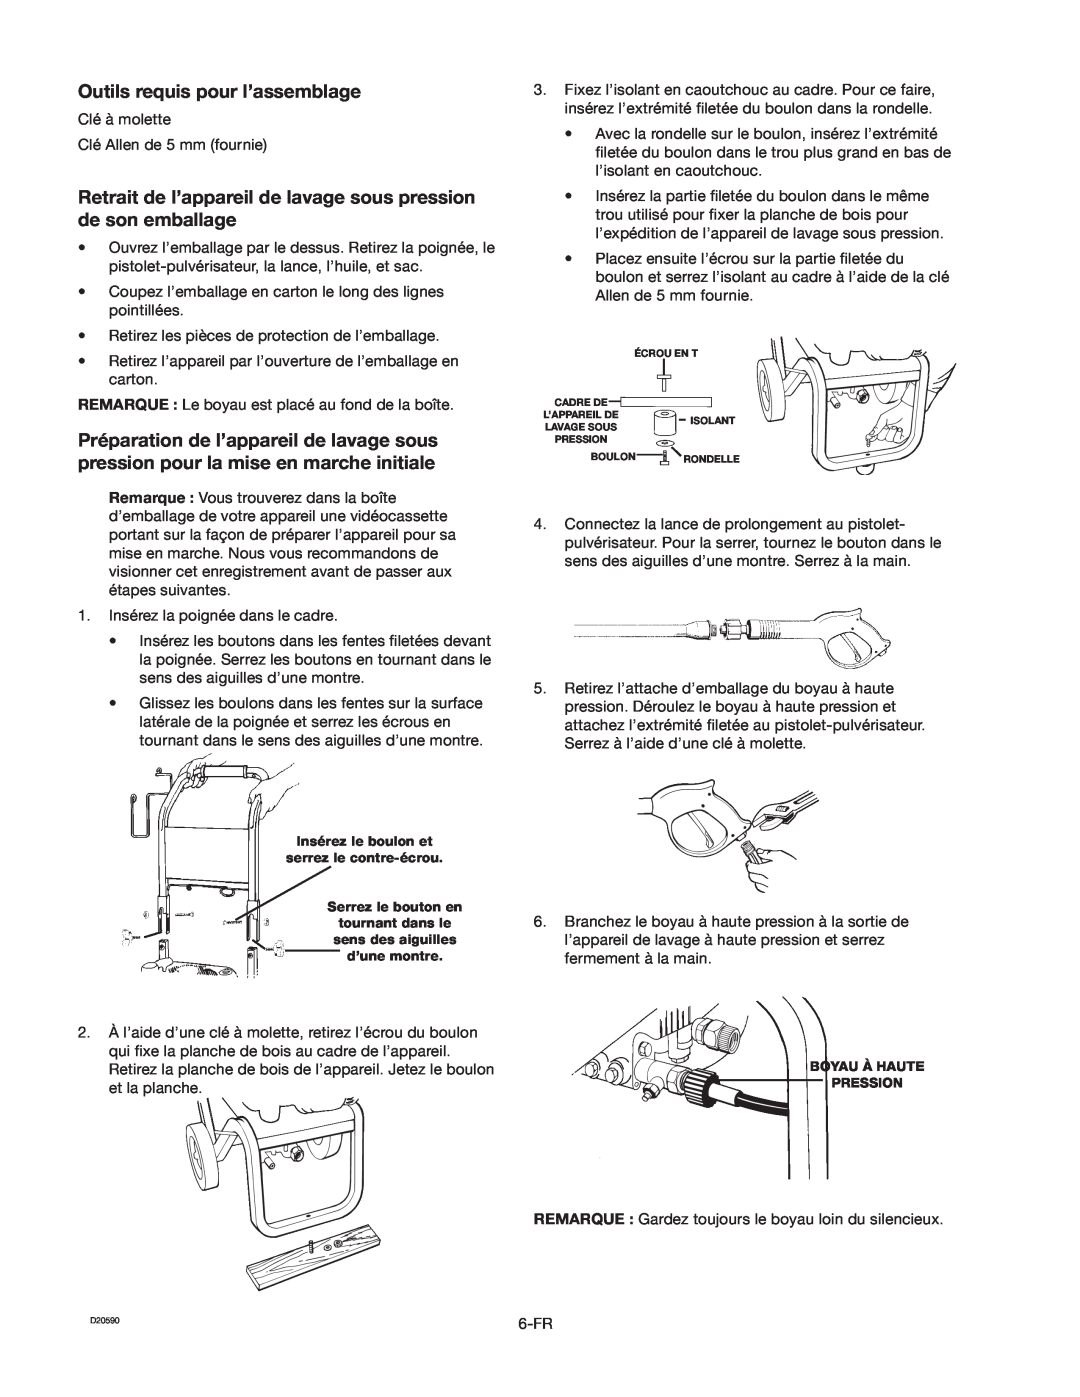 Craftsman 919.670280, D20590 owner manual Outils requis pour l’assemblage, Préparation de l’appareil de lavage sous 